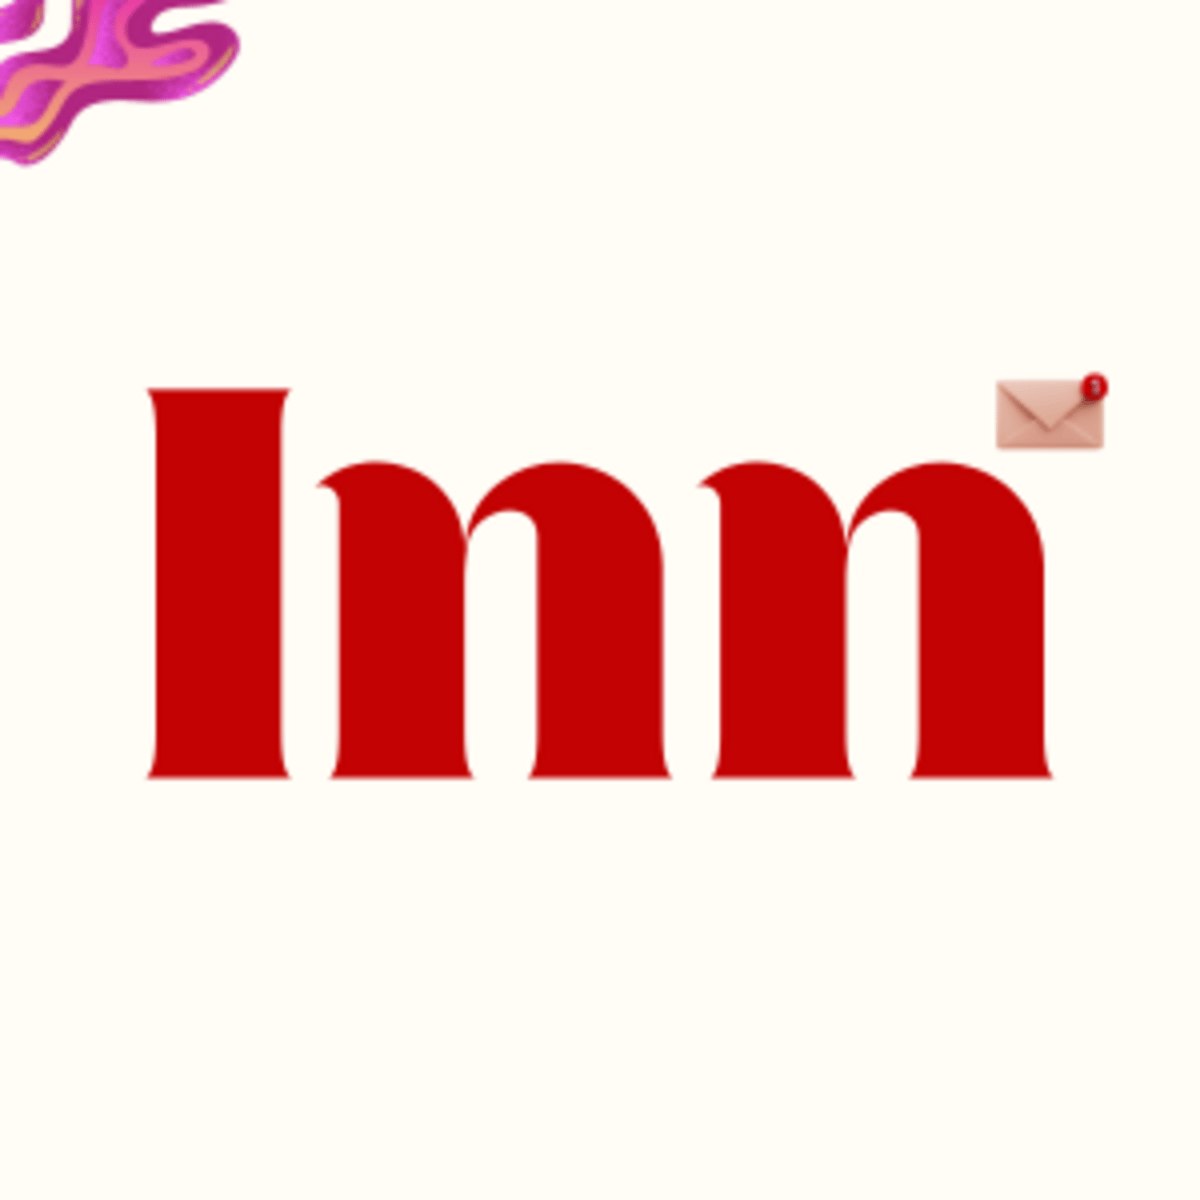 The Inn logo